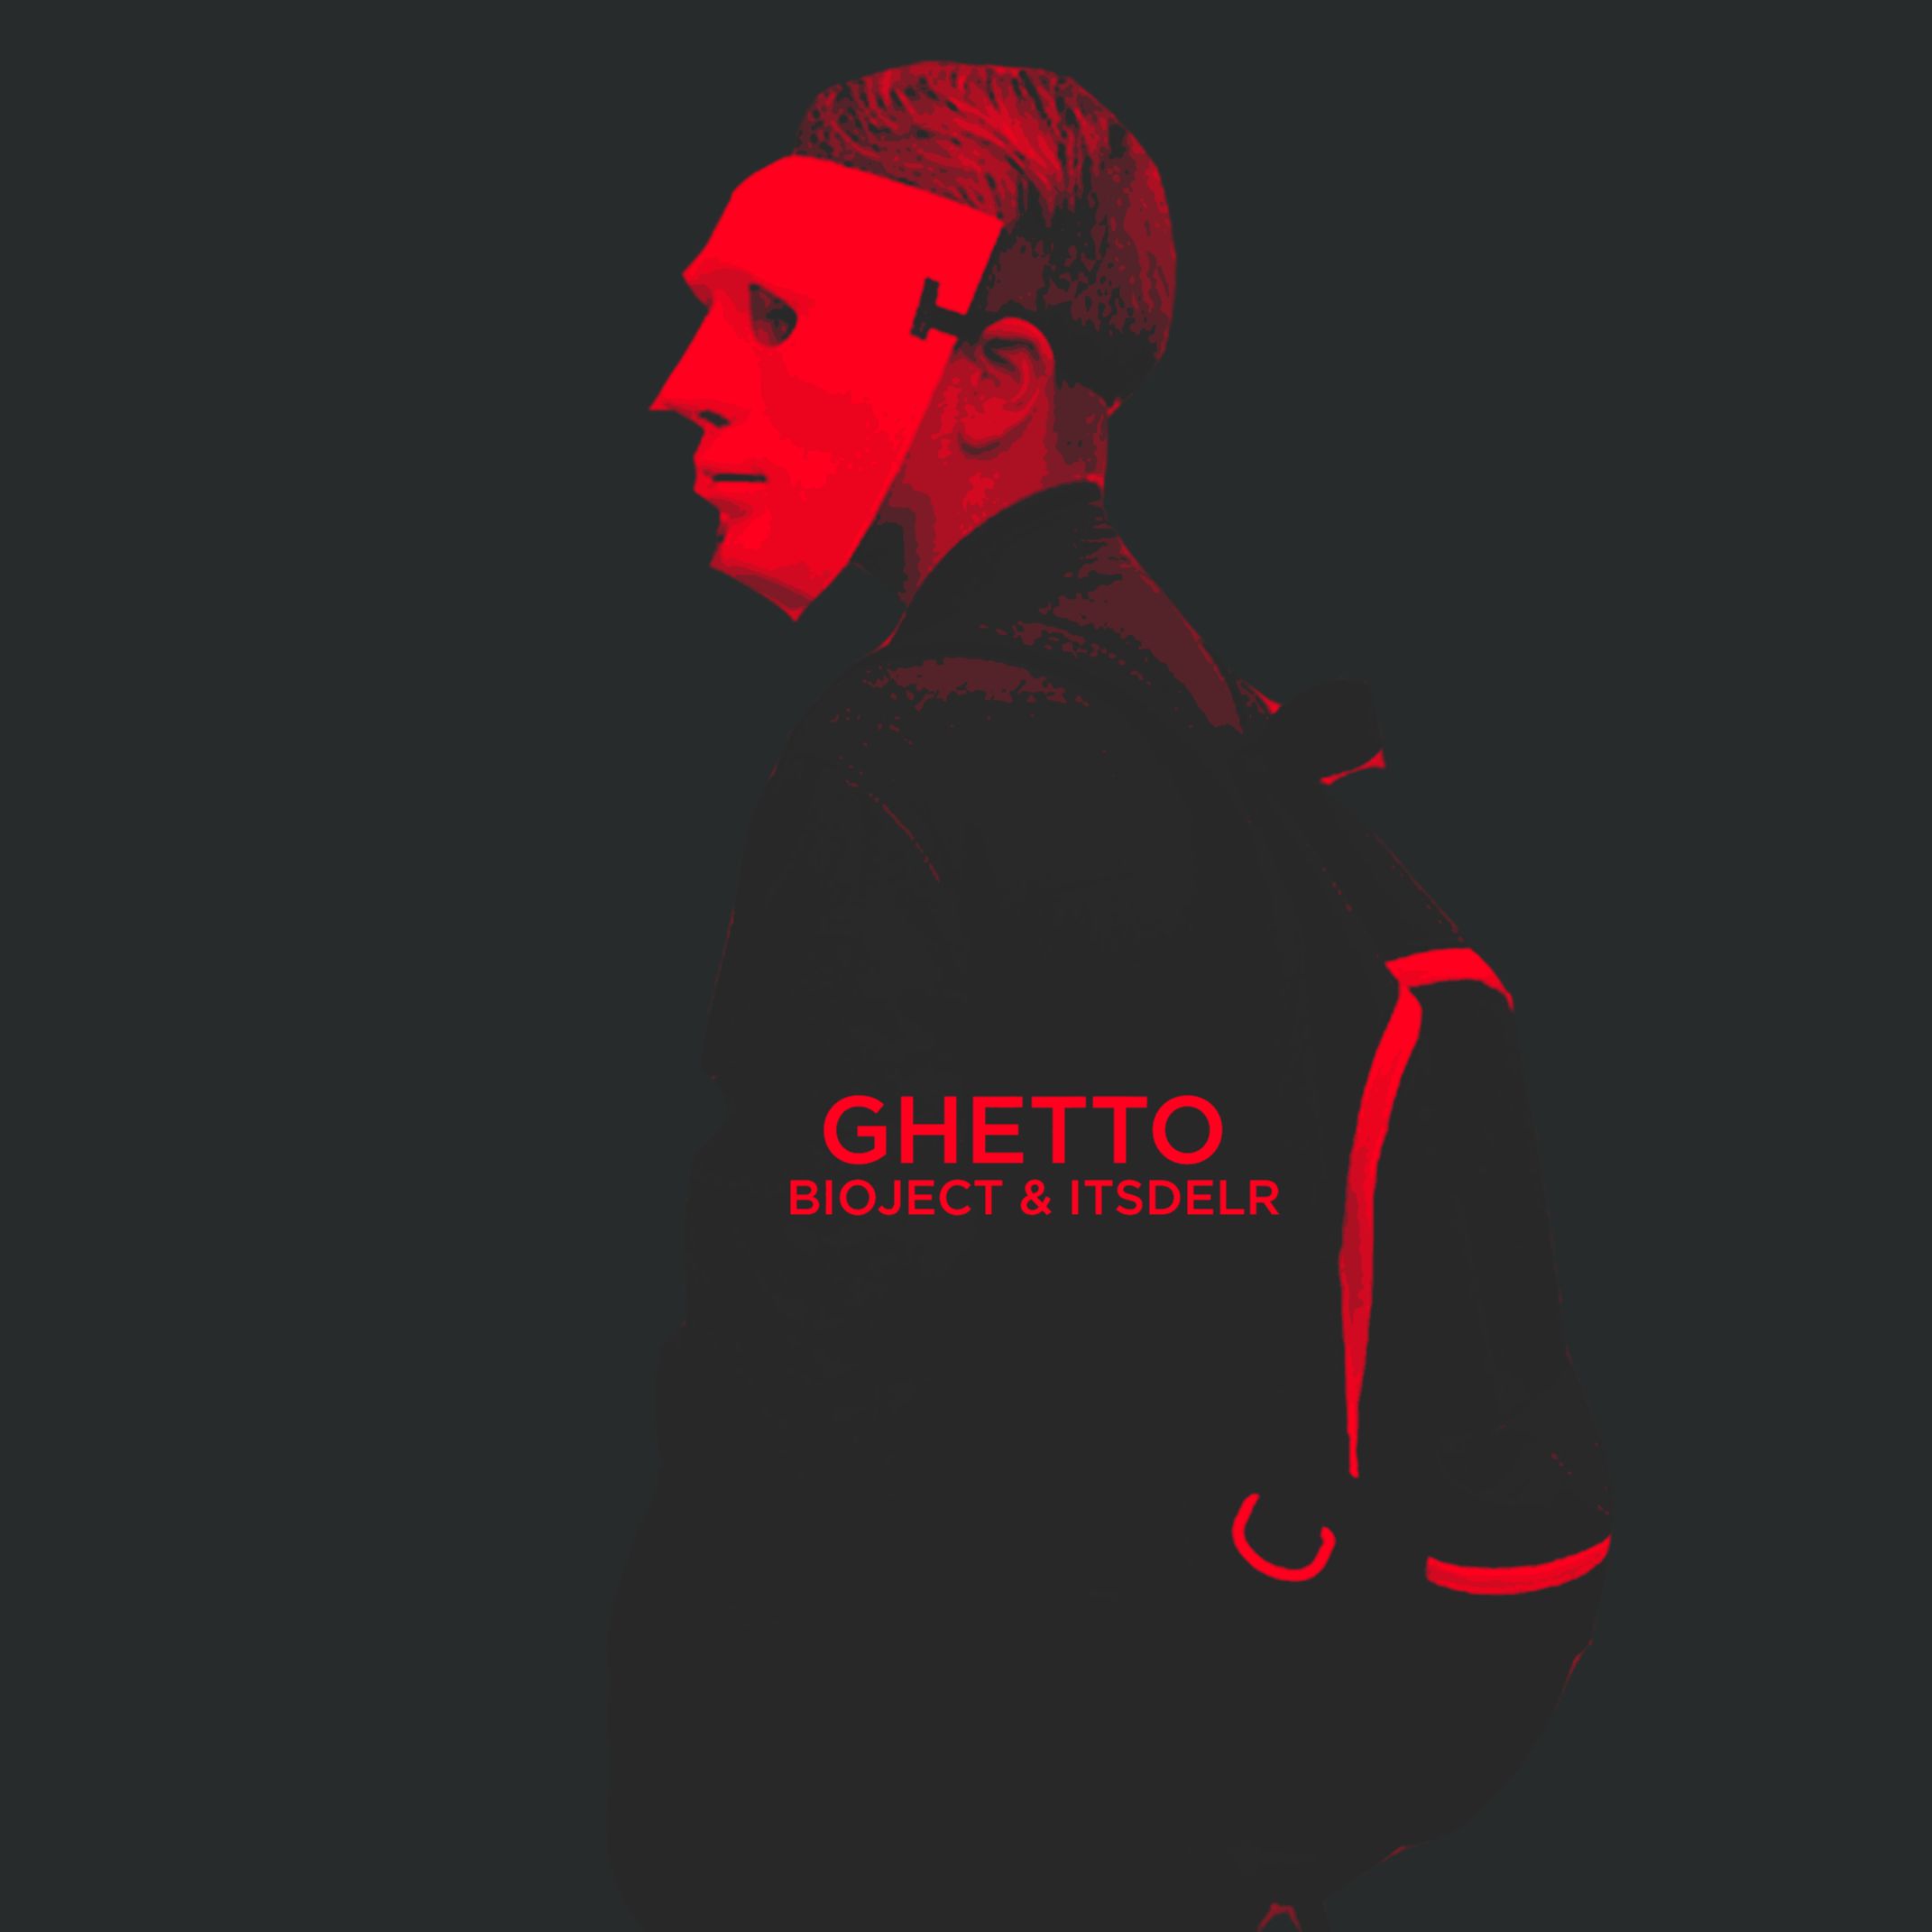 Khoasolla BIOJECT & itsdelr - Ghetto [ Trap City Premiere ]